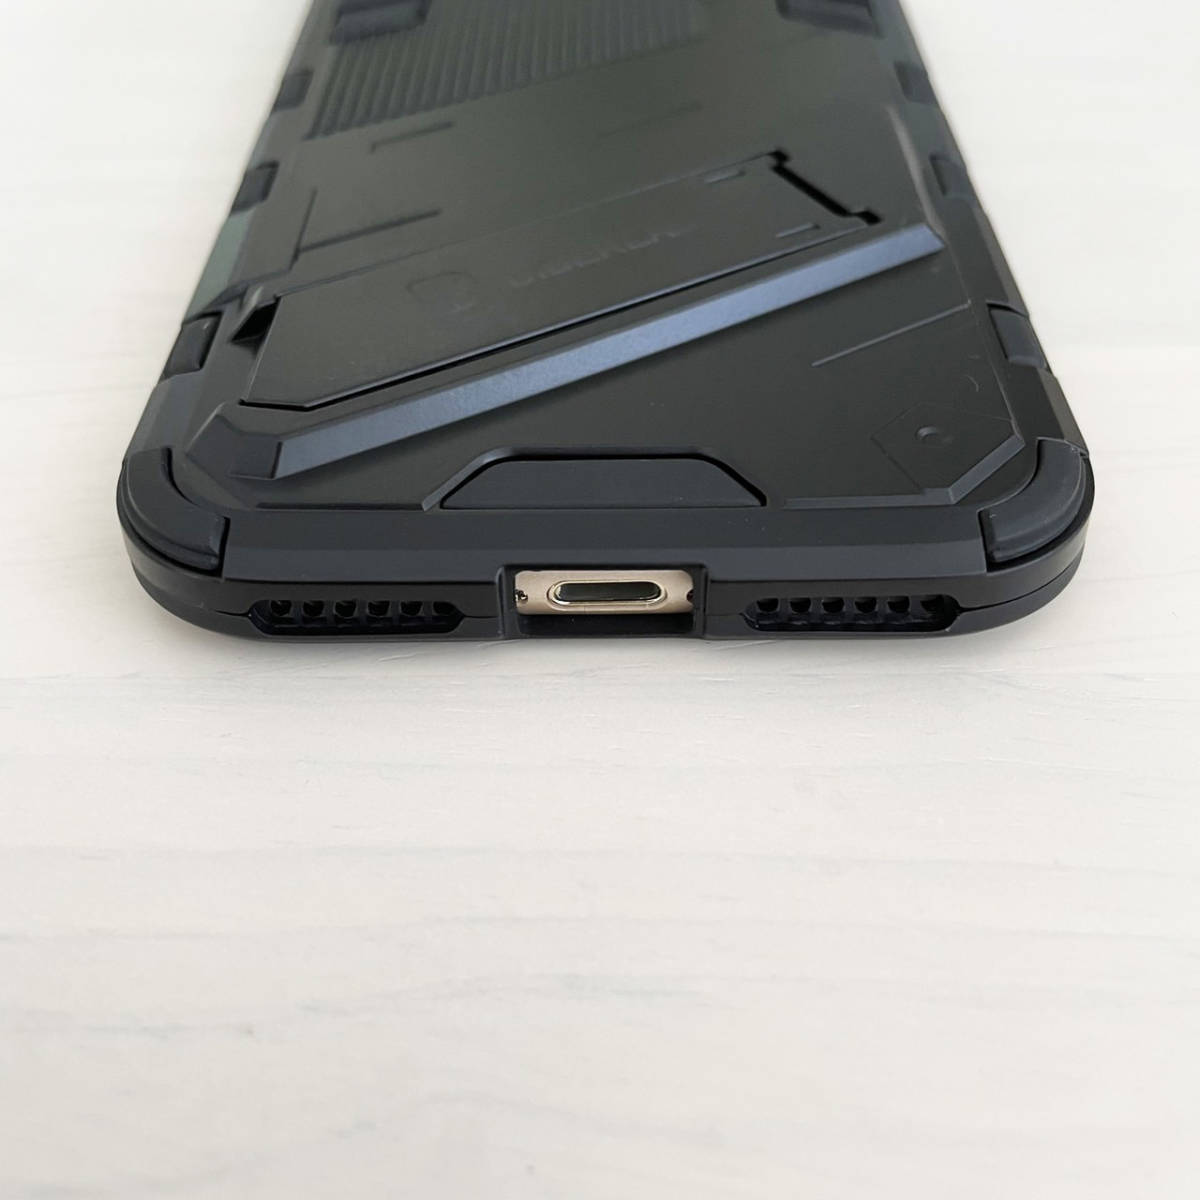 iPhone 7 / 8 / SE (第2世代/第3世代) SE2 SE3 ケース バンパー型 スタンド付き ブラック 黒 アーマー仕様_画像7